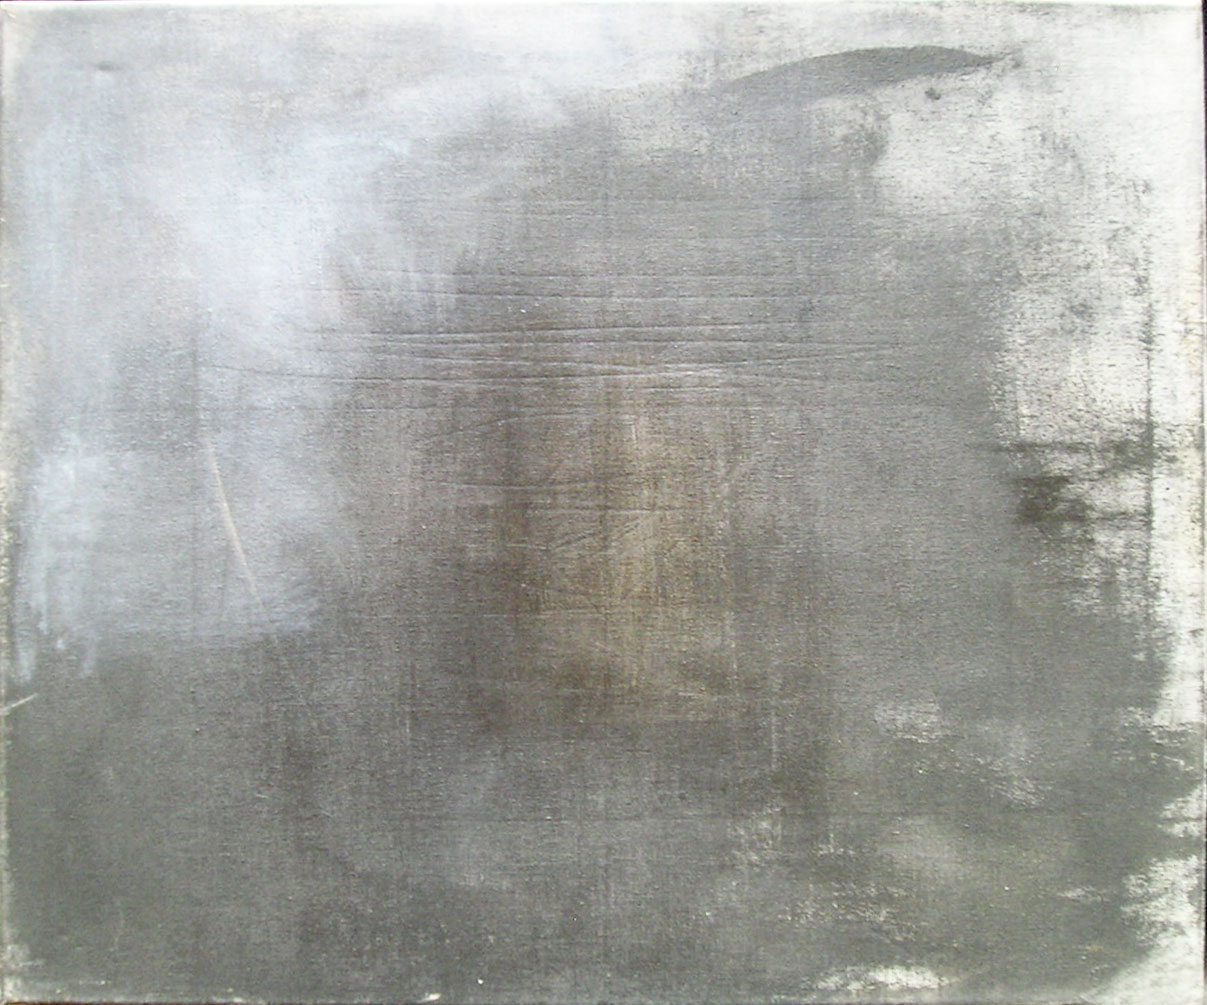 Paisaje, acrílico sobre tela, 50 cm x 70 cm, 1989